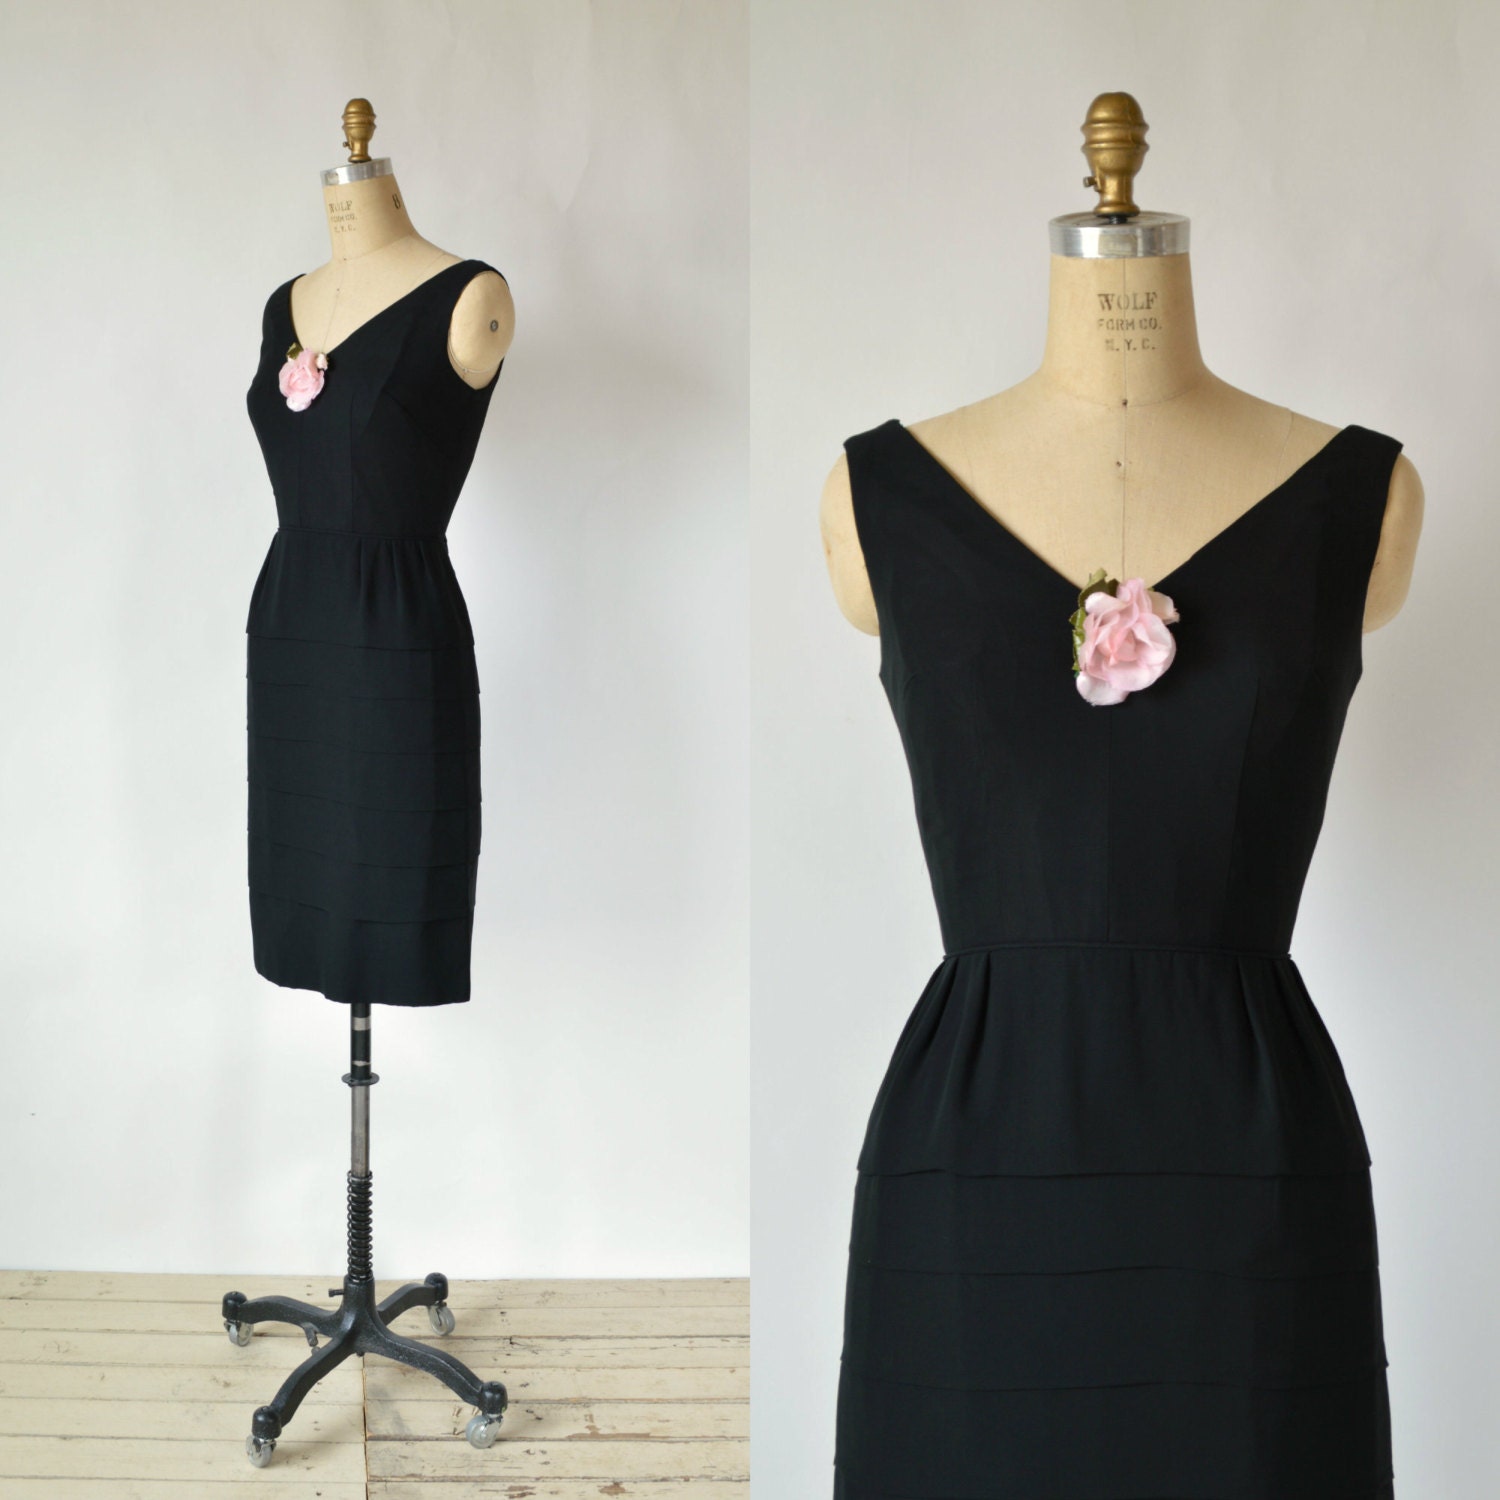 SALE /// 1960s Cocktail Dress Vintage Black Holiday Dress